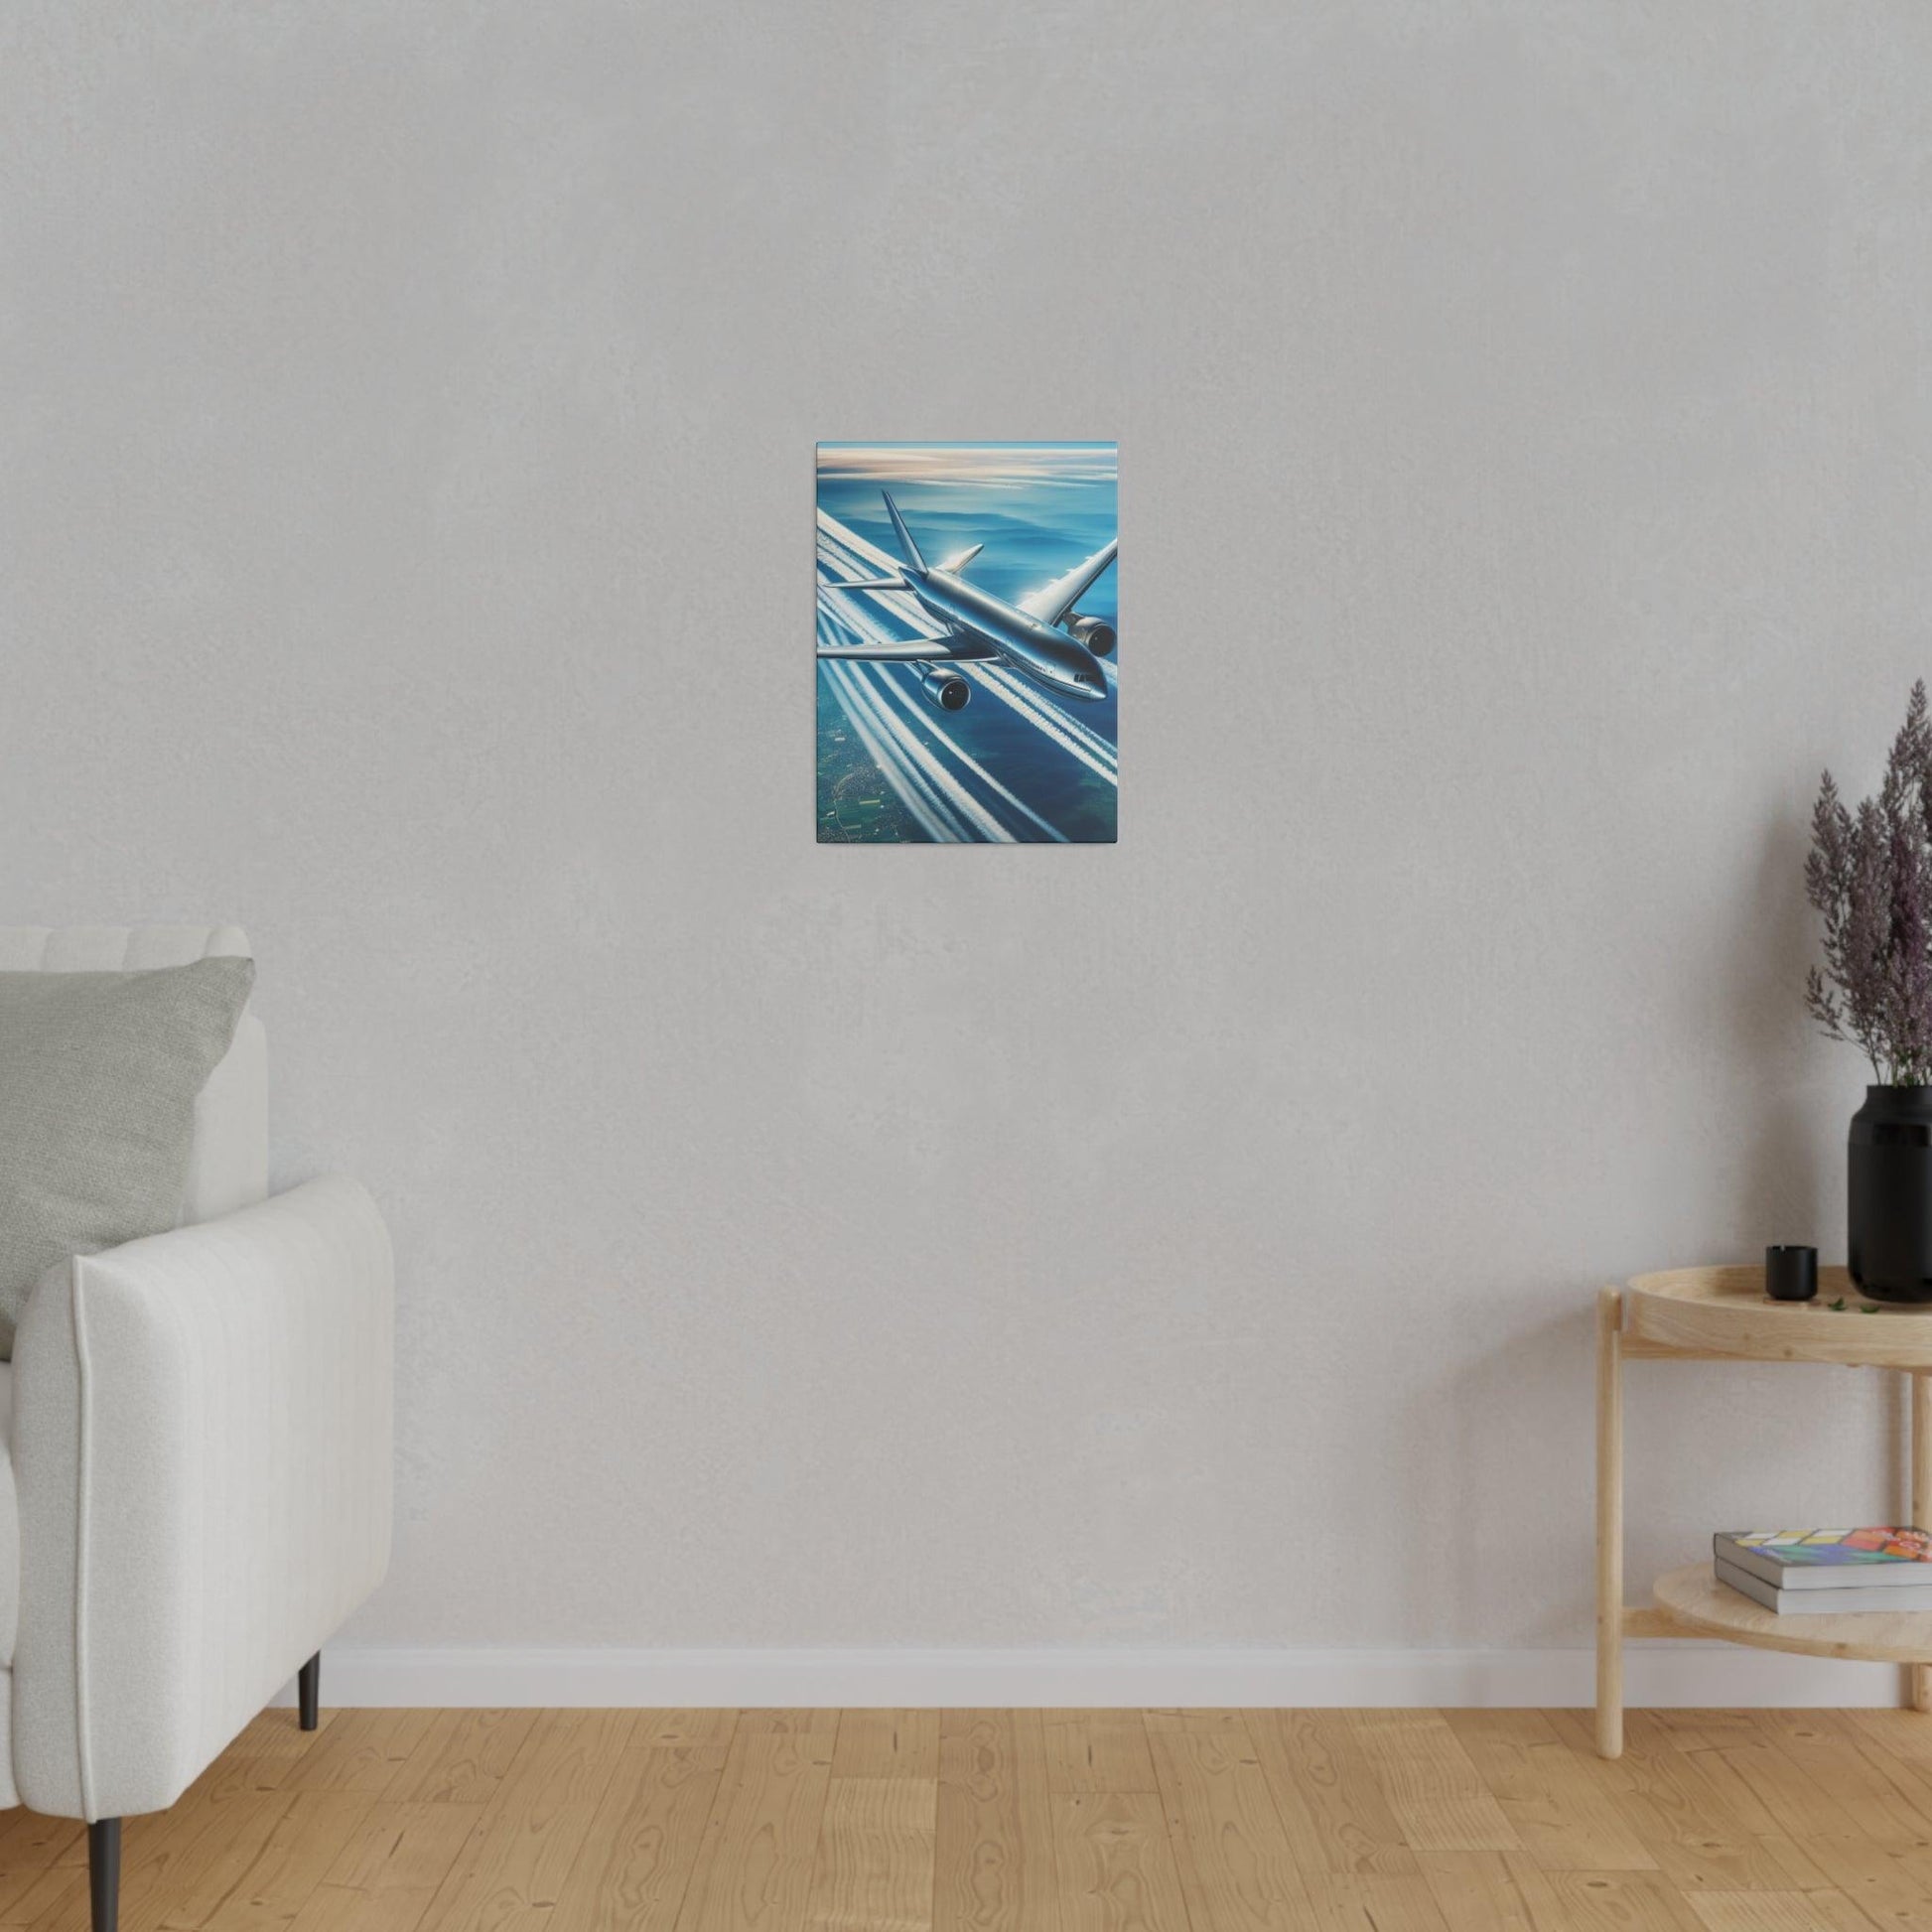 "Skyward Soirée: An Airplane-Themed Canvas Wall Art Collection" - The Alice Gallery